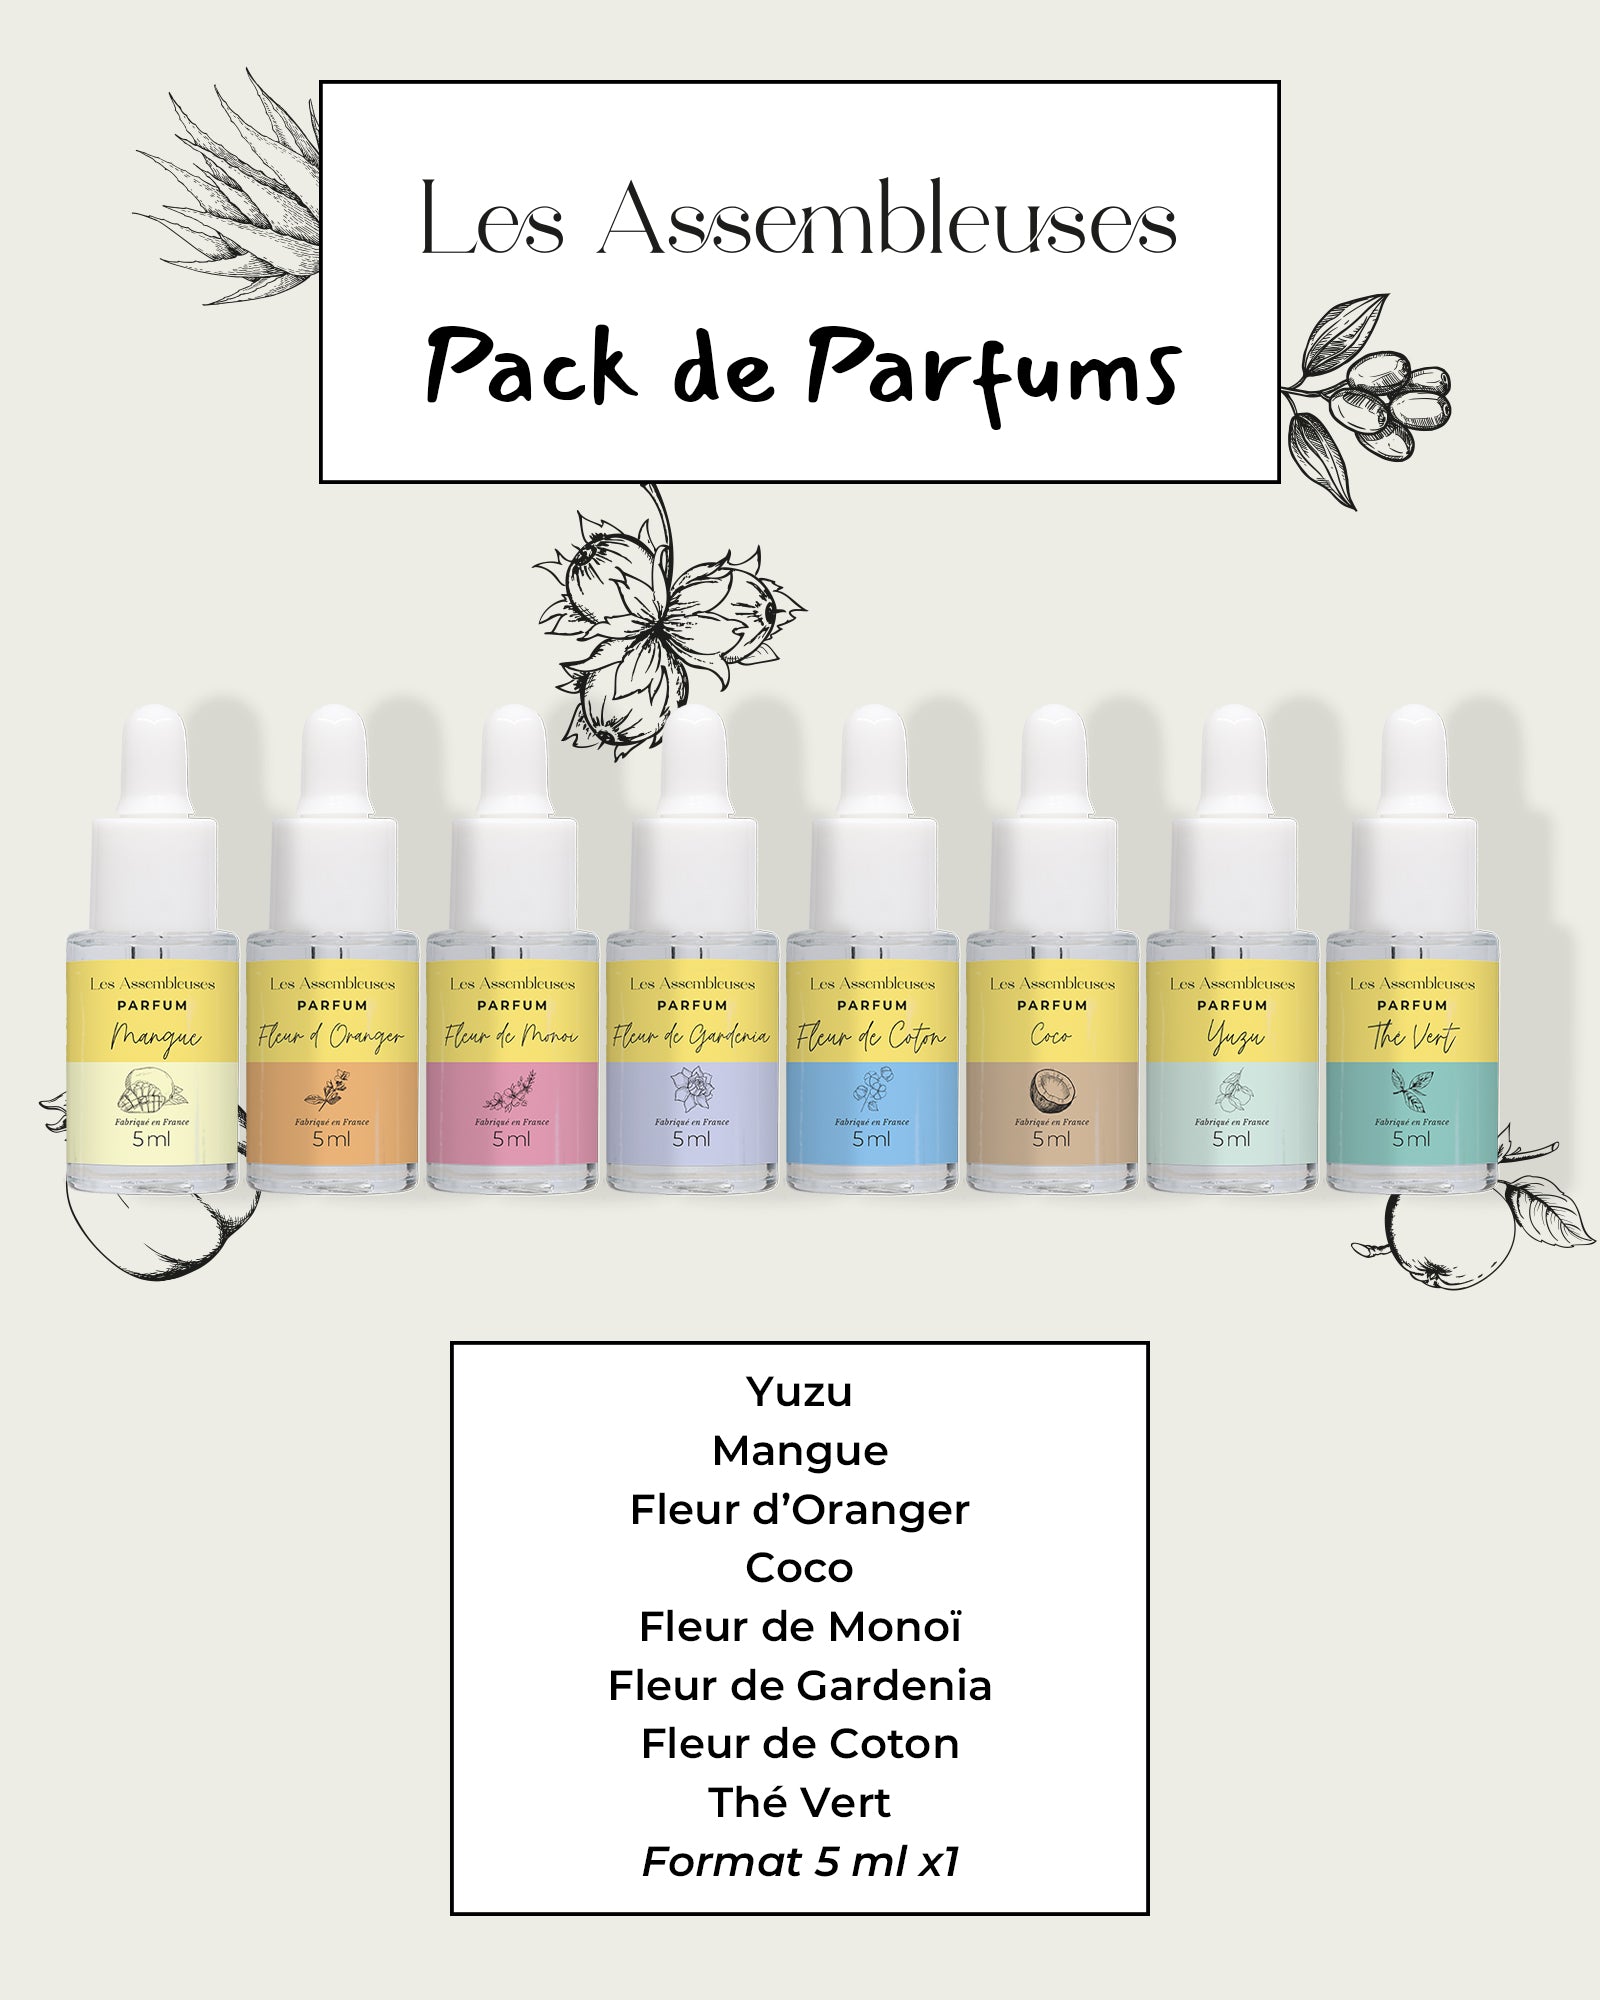 Pack de Parfums